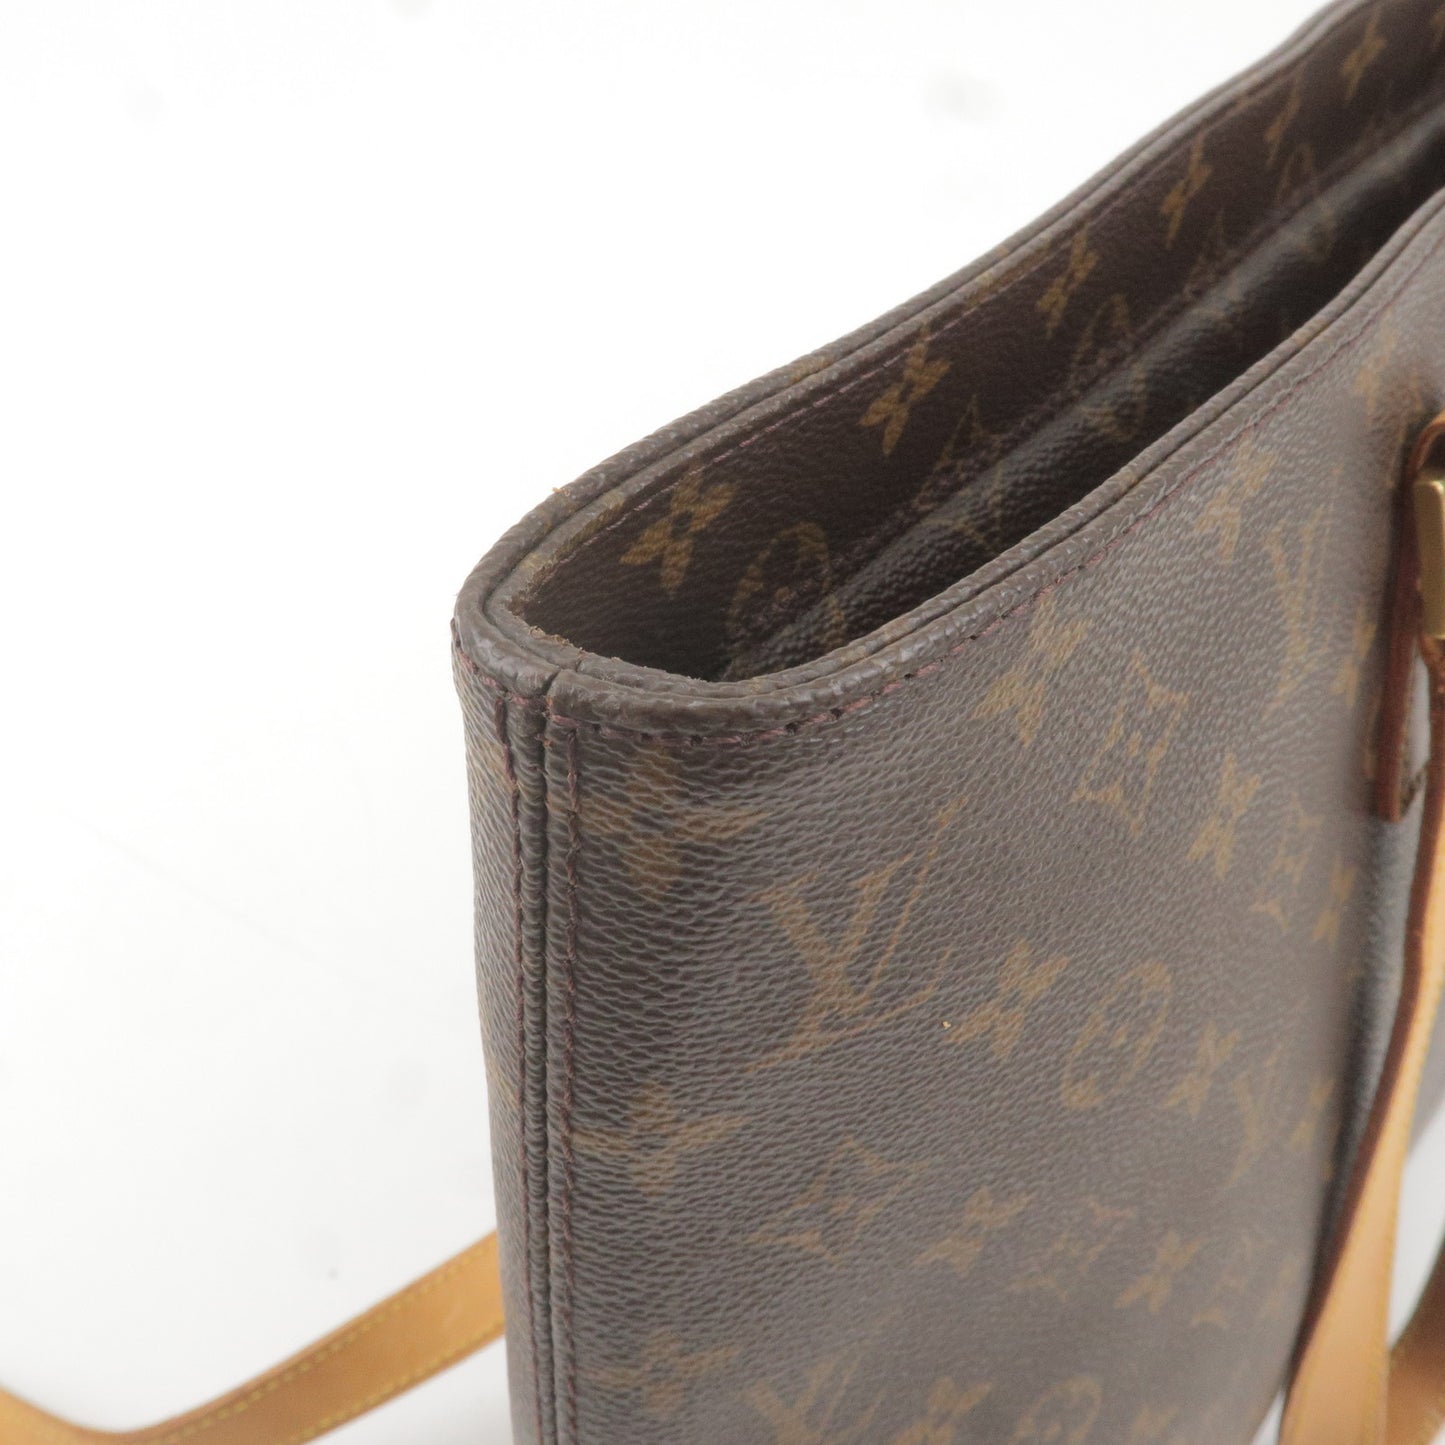 Authentic Louis Vuitton Monogram Luco Shoulder Tote Bag M51155 LV